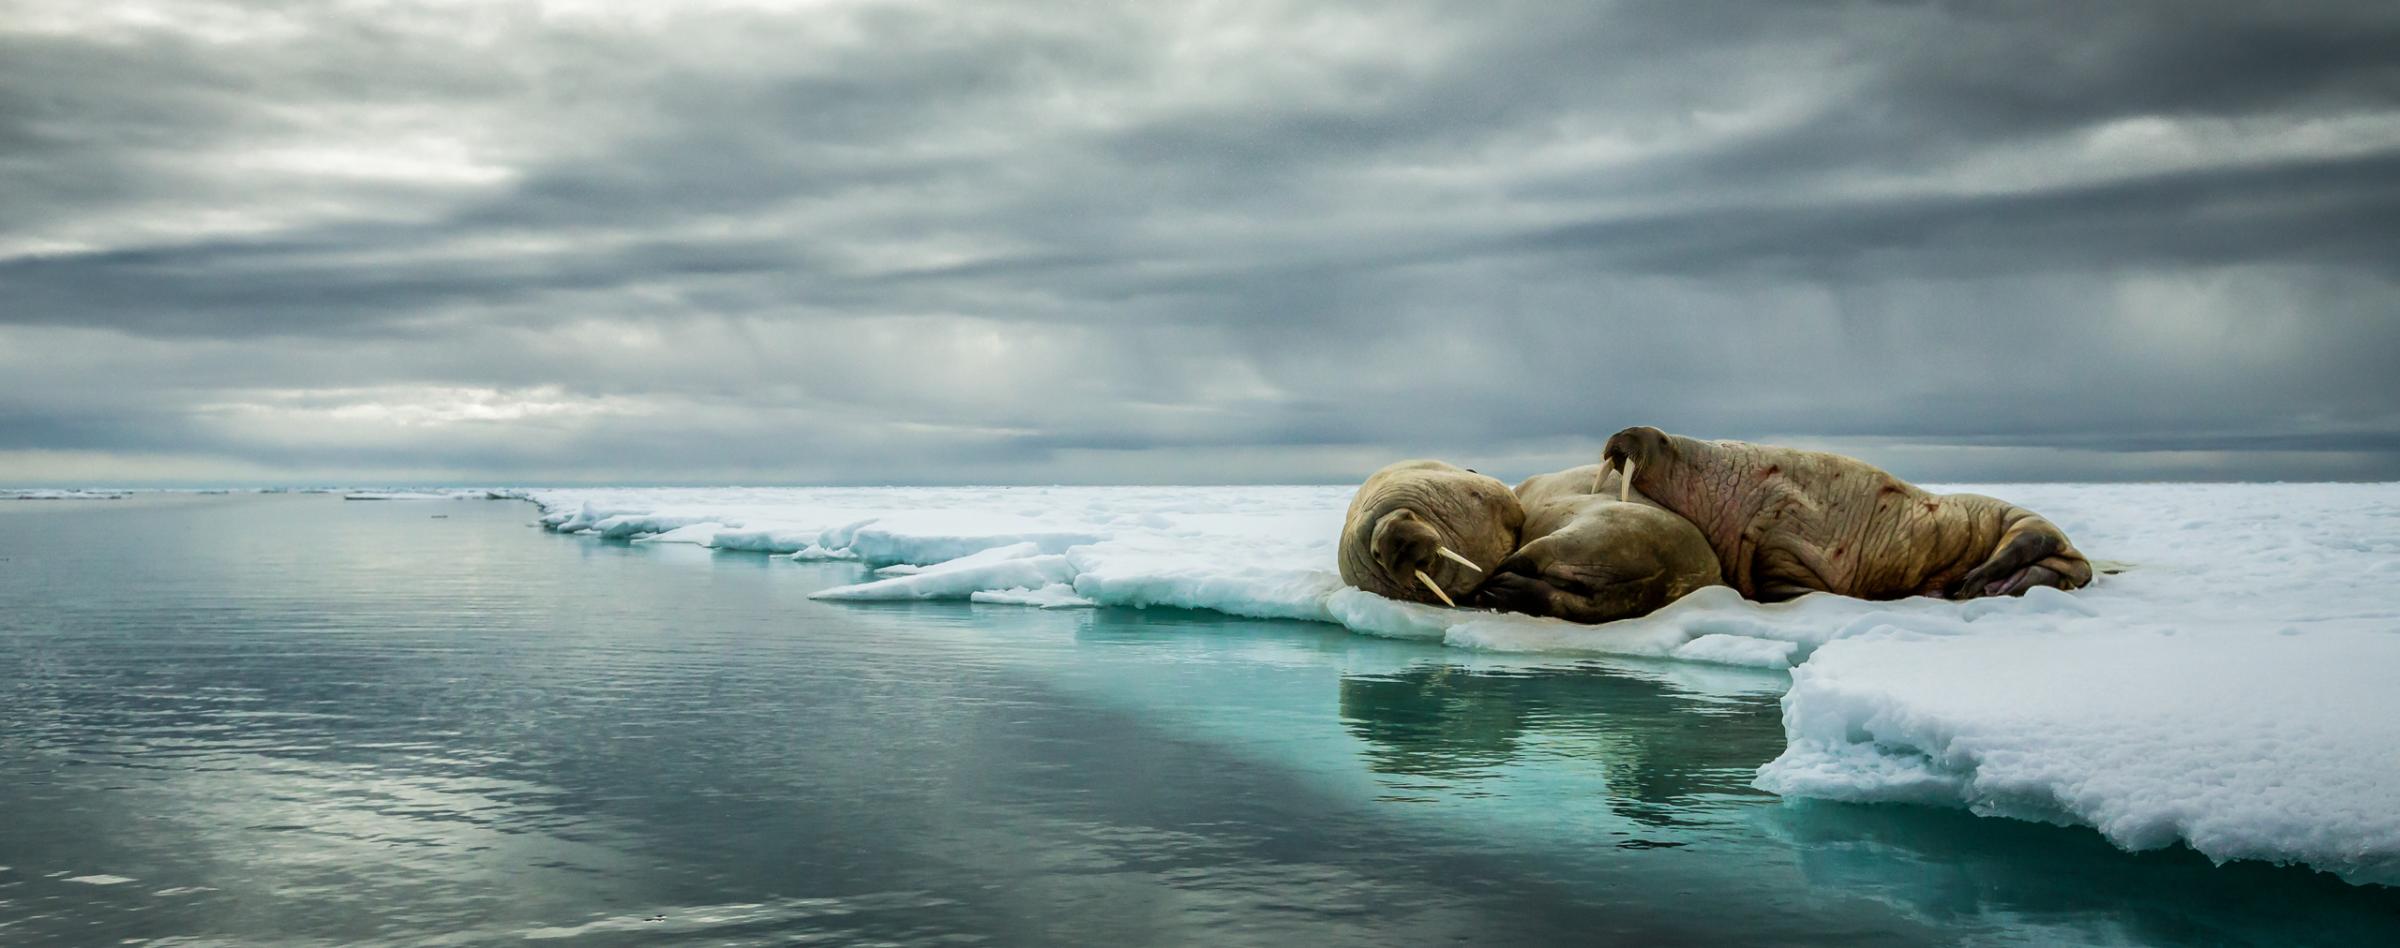 Walrus huddle in Svalbard, Norway, 2015.